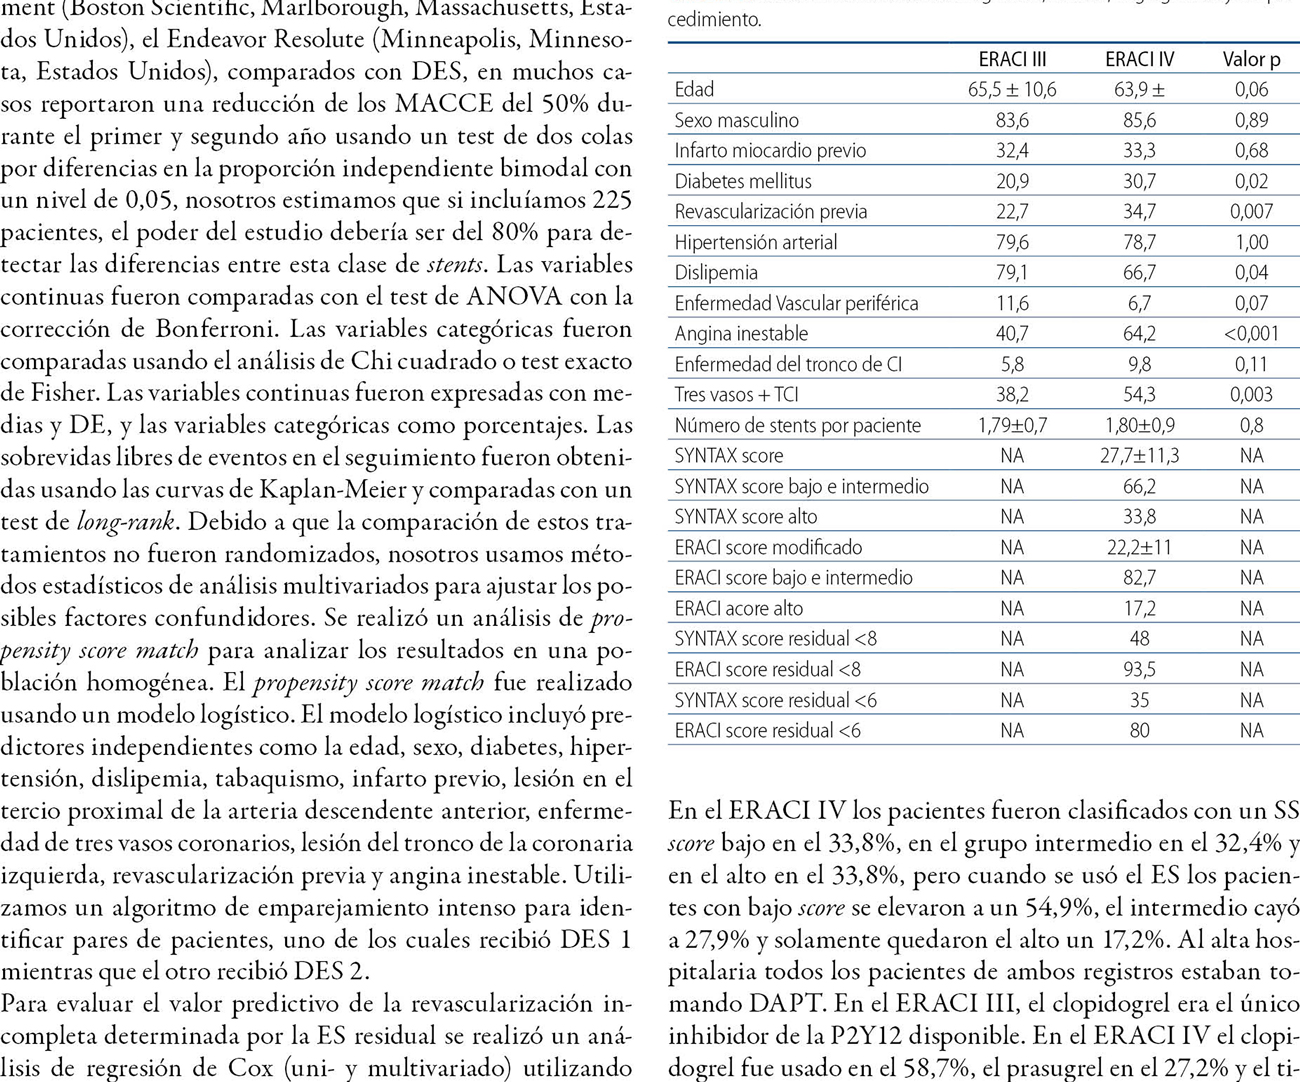 Cinco años de seguimiento del estudio ERACI IV - score de SYNTAX modificado como score de riesgo ERACI para pacientes con enfermedad de múltiples vasos y enfermedad de tronco de la coronaria izquierda